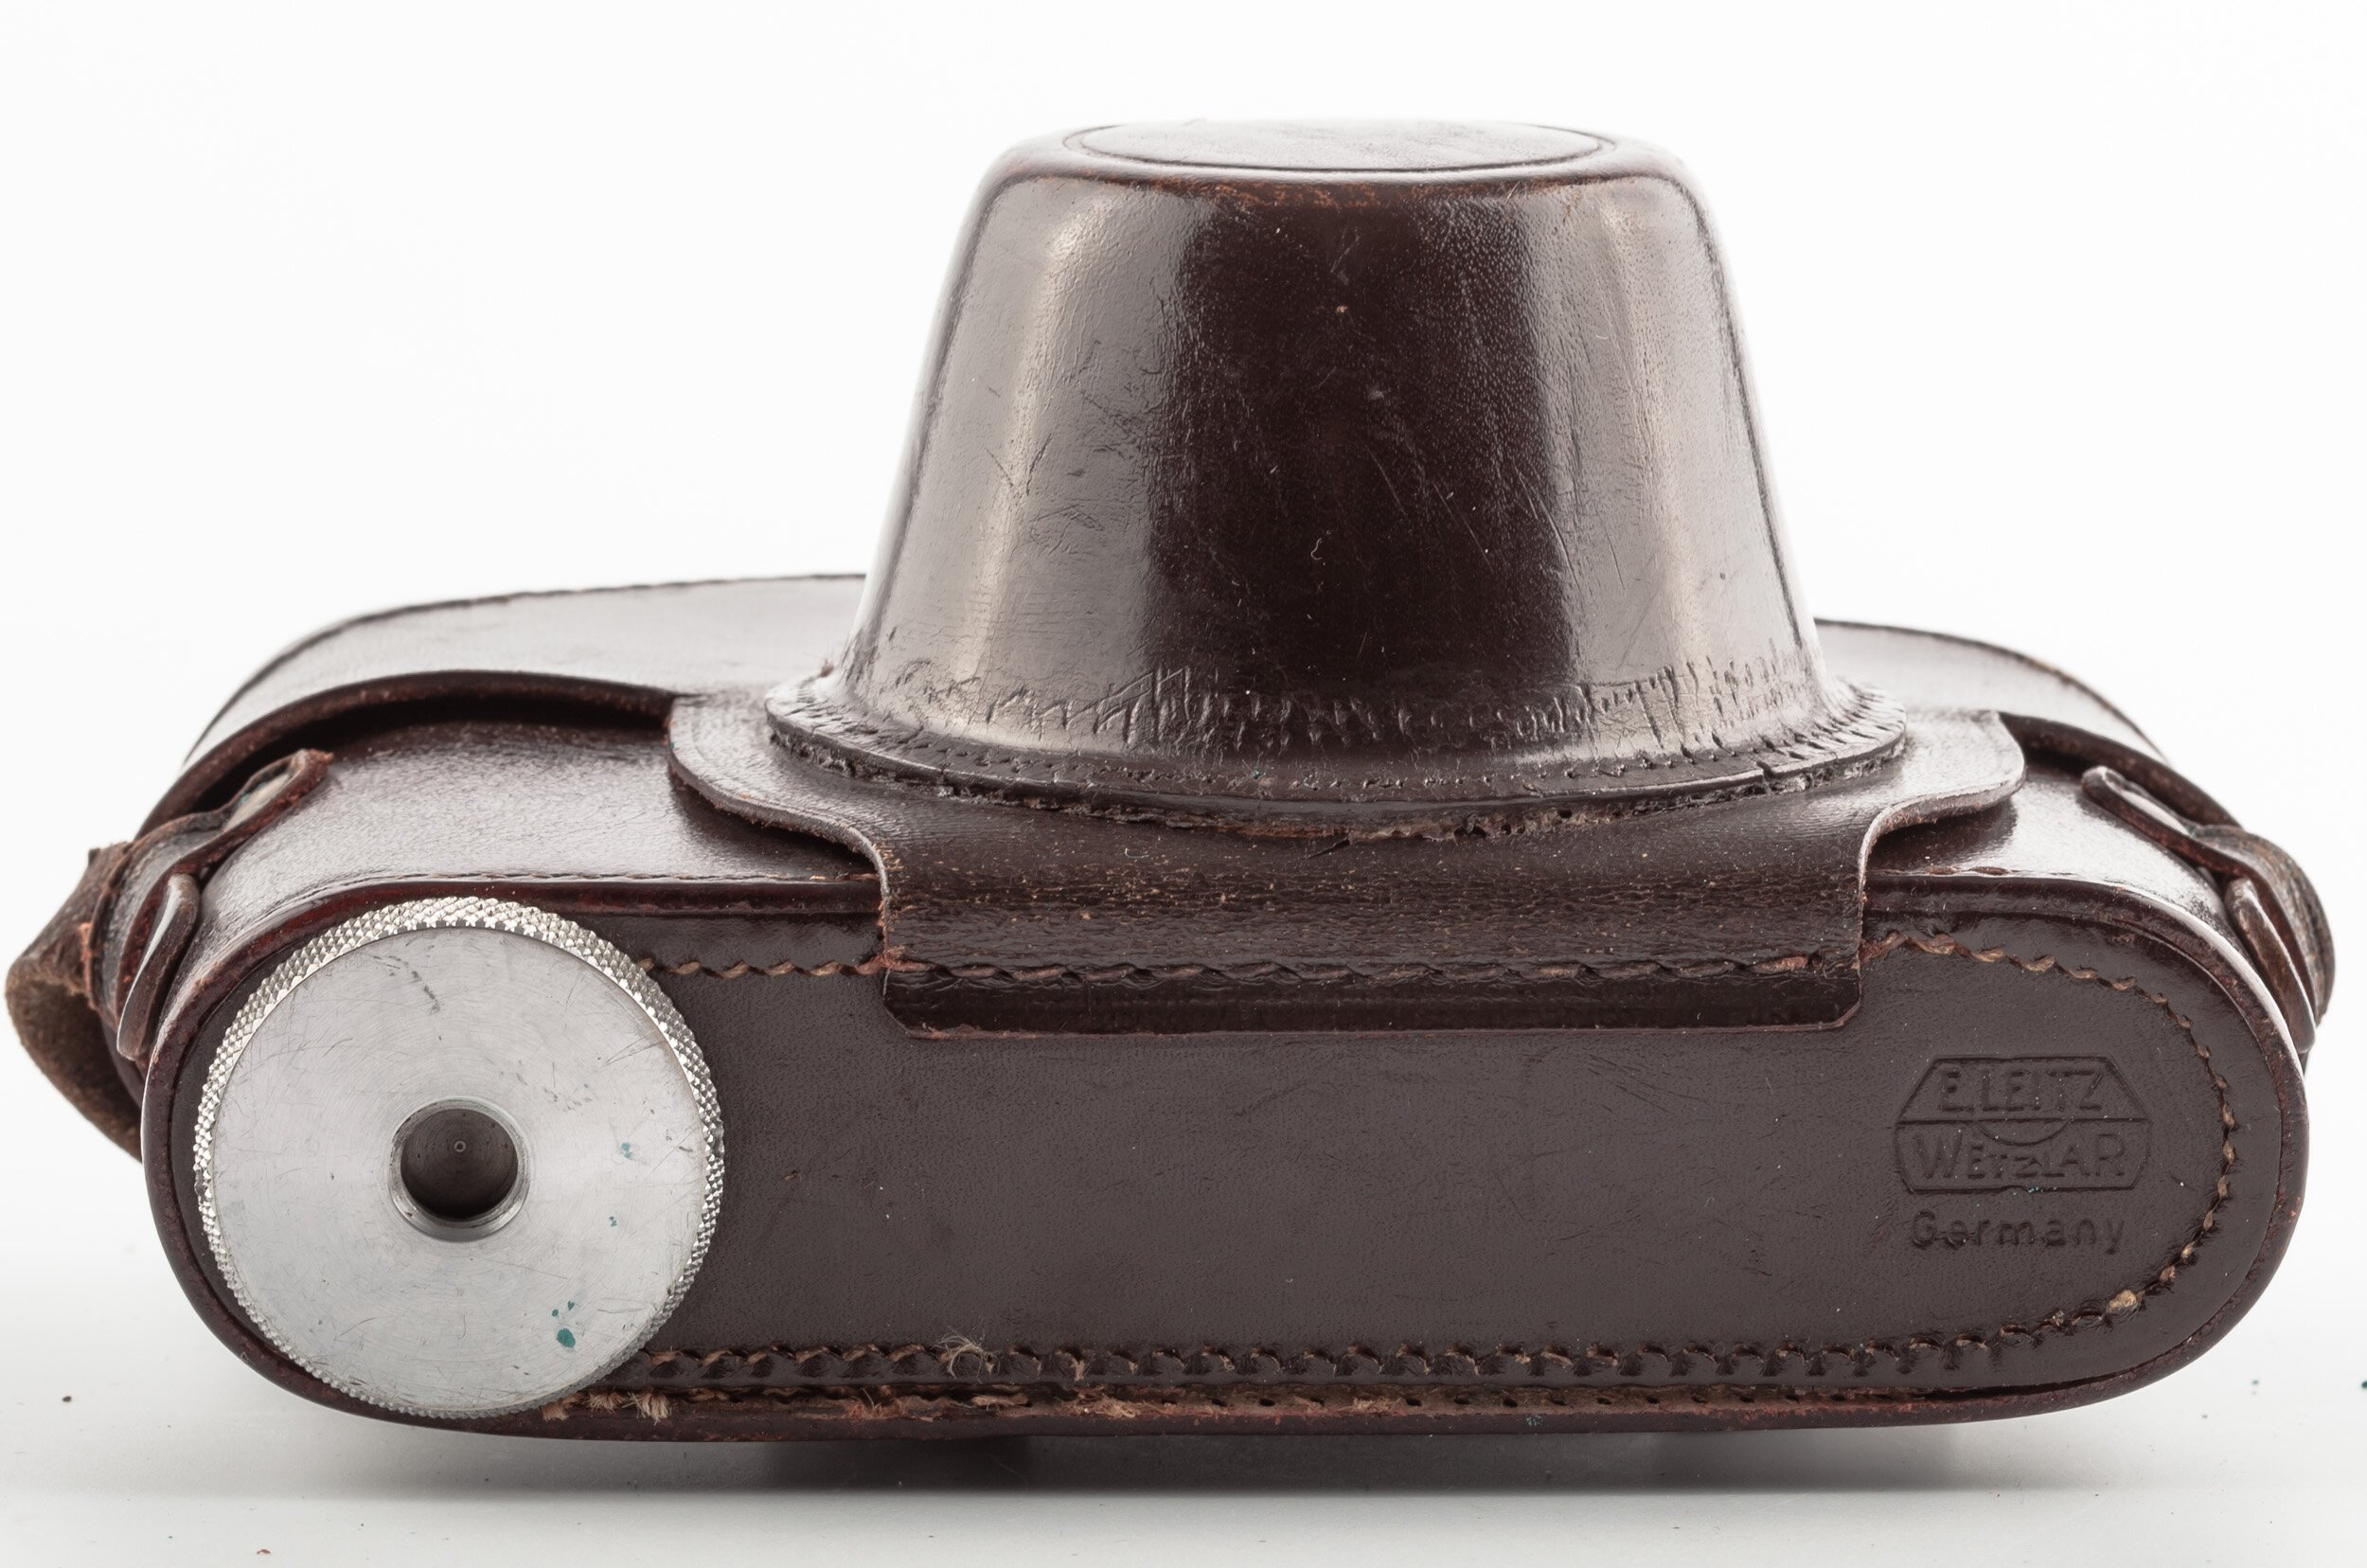 Leica Case srew mount body